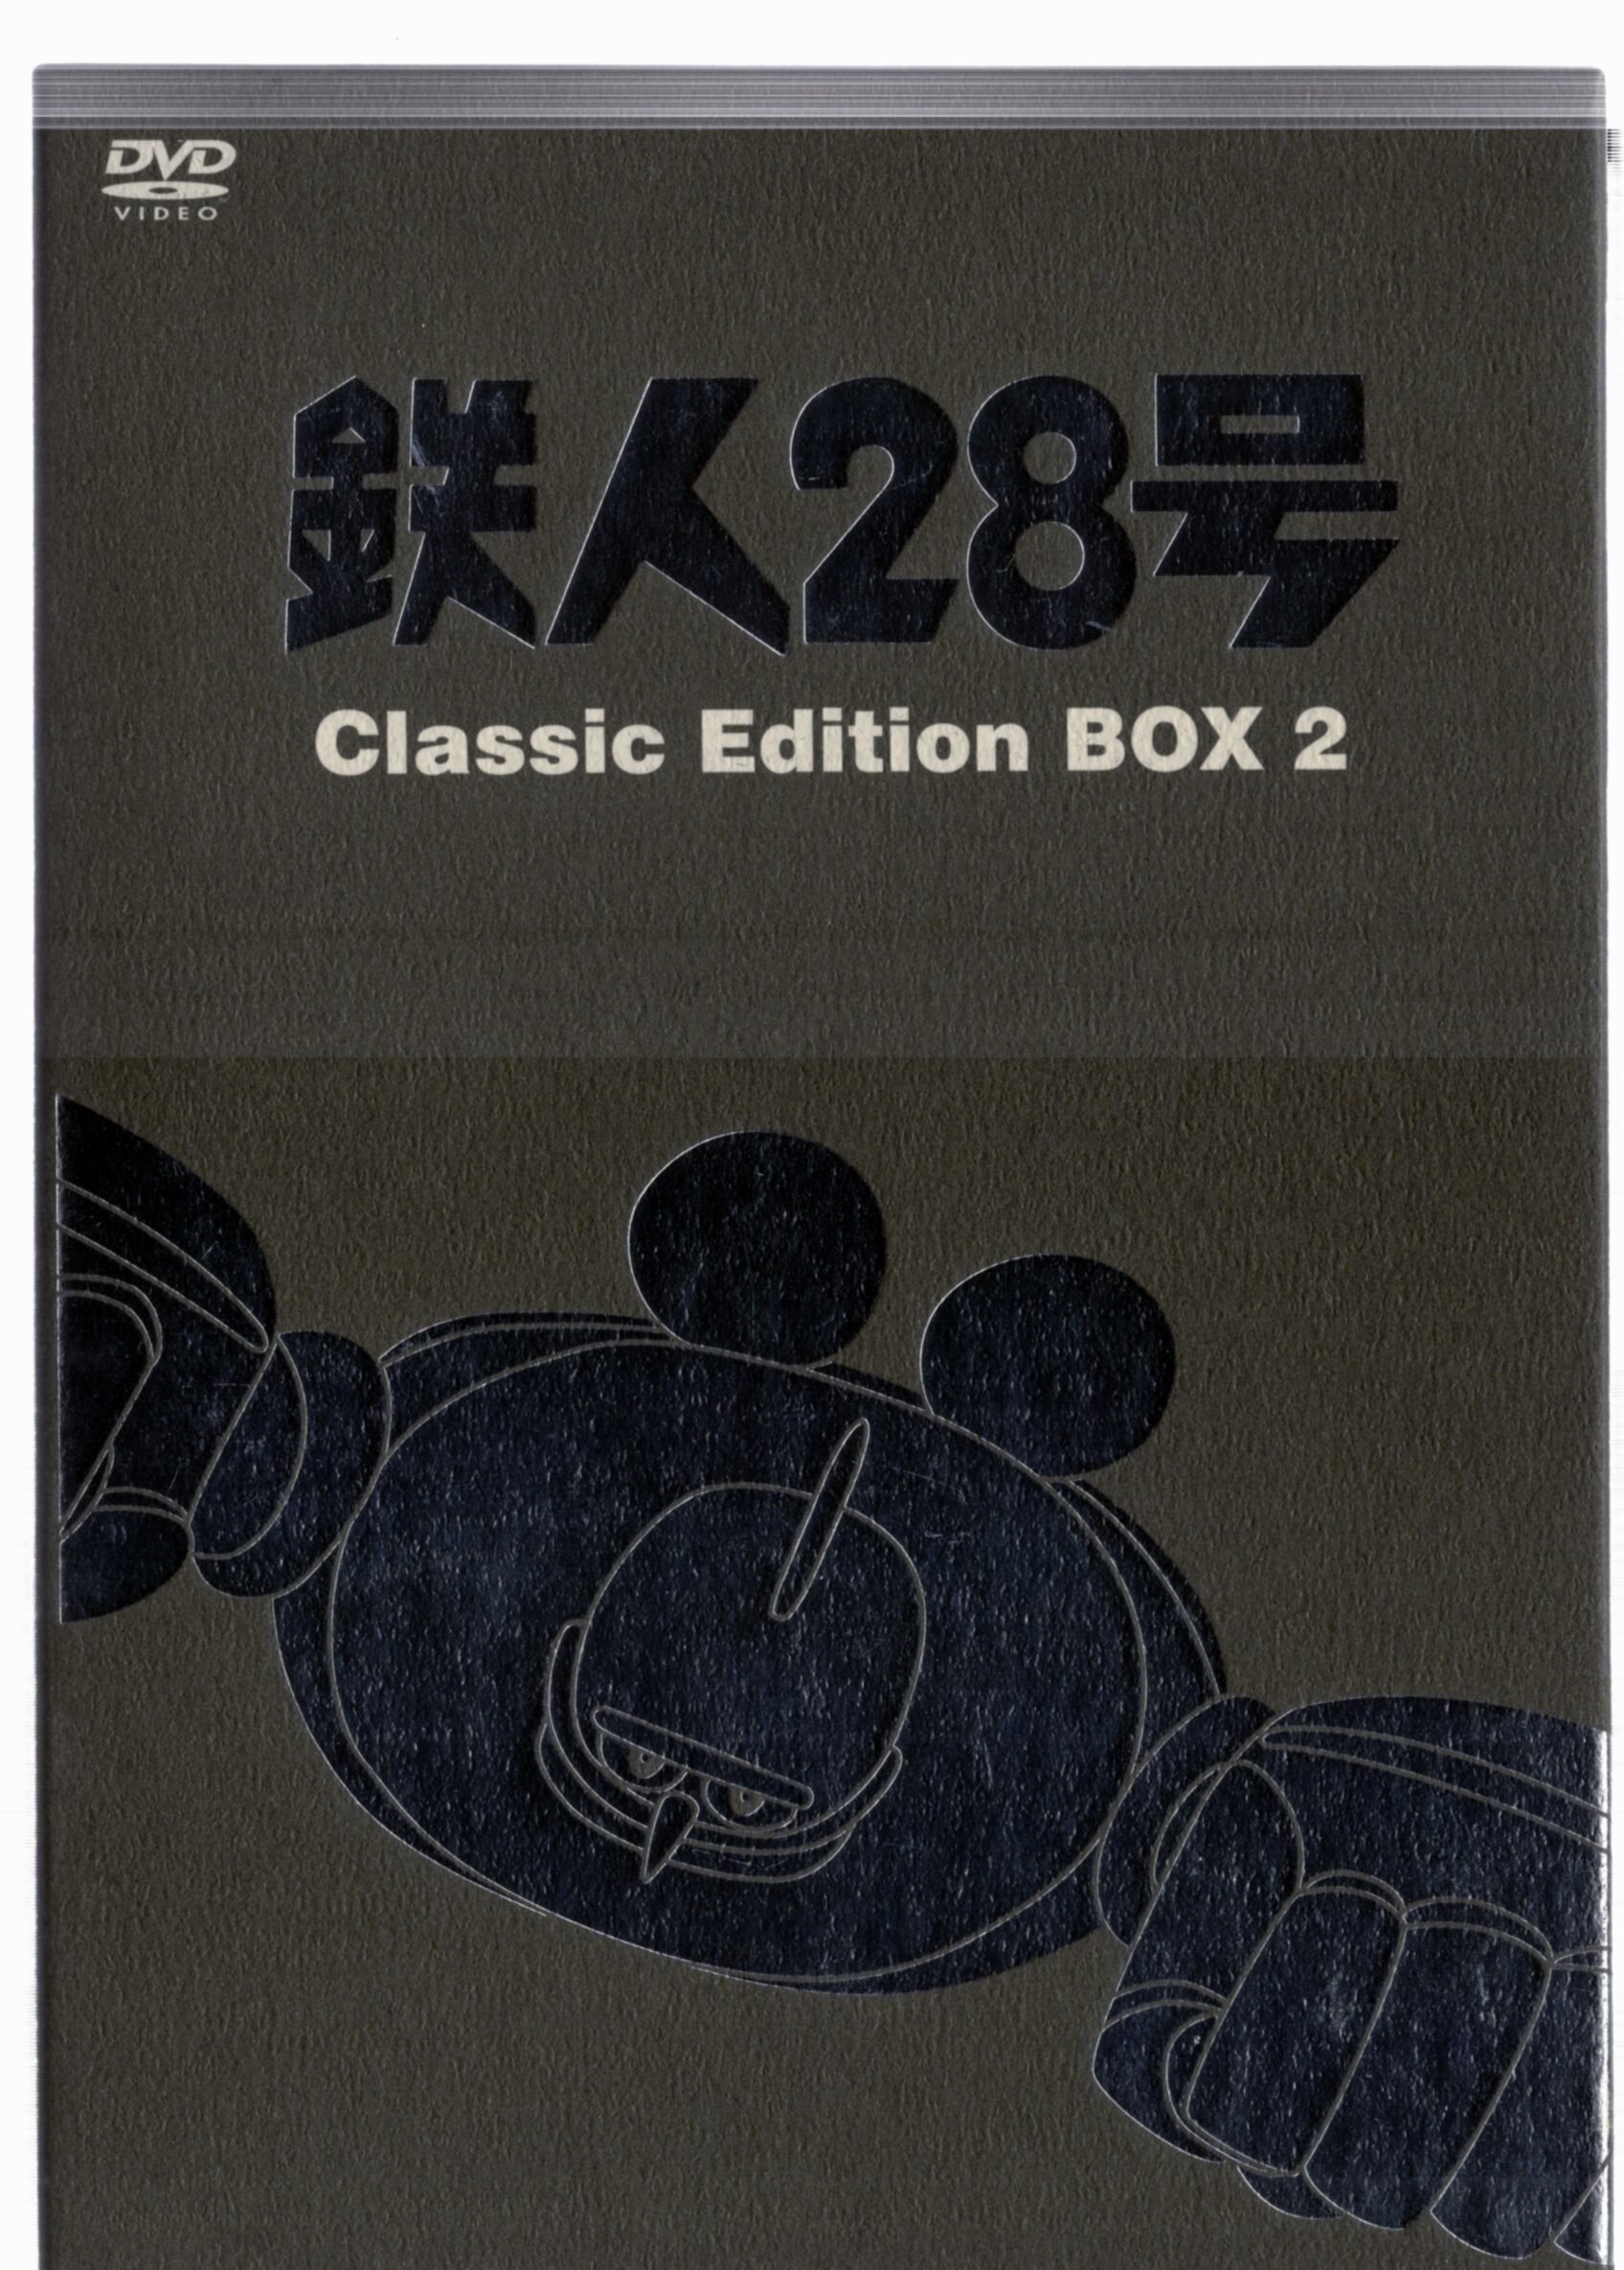 スより 鉄人28号 Classic Edition BOX 4 DVD レビュー